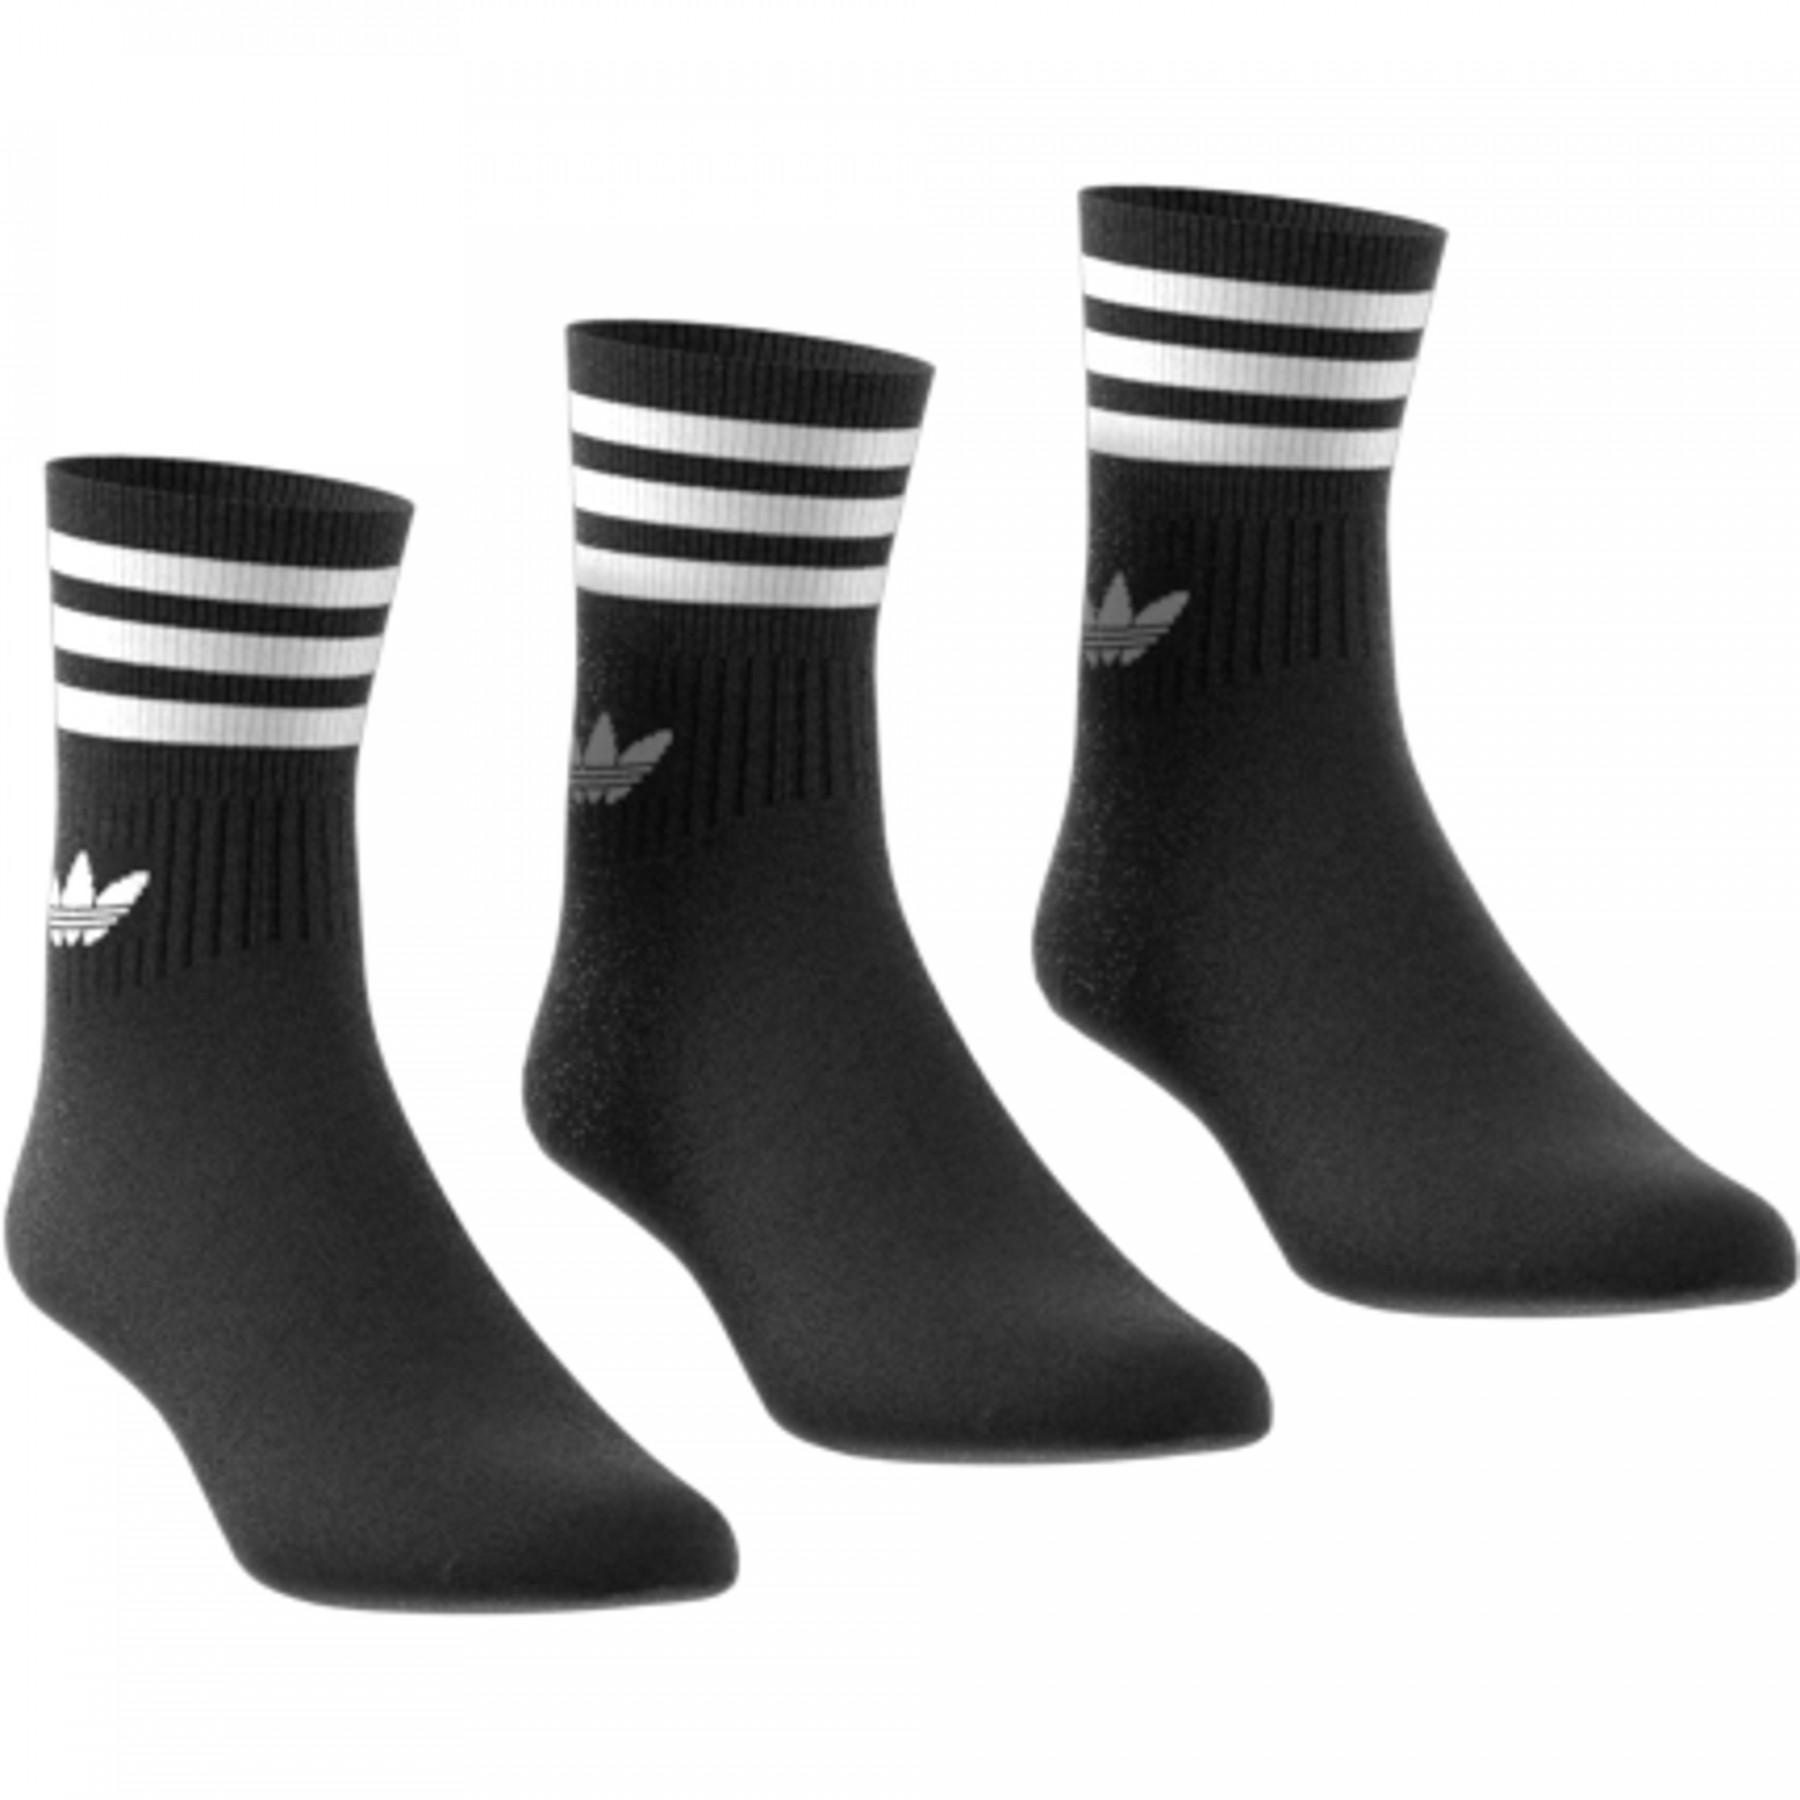 mid-calf socks adidas Mid-Cut (3 pairs)